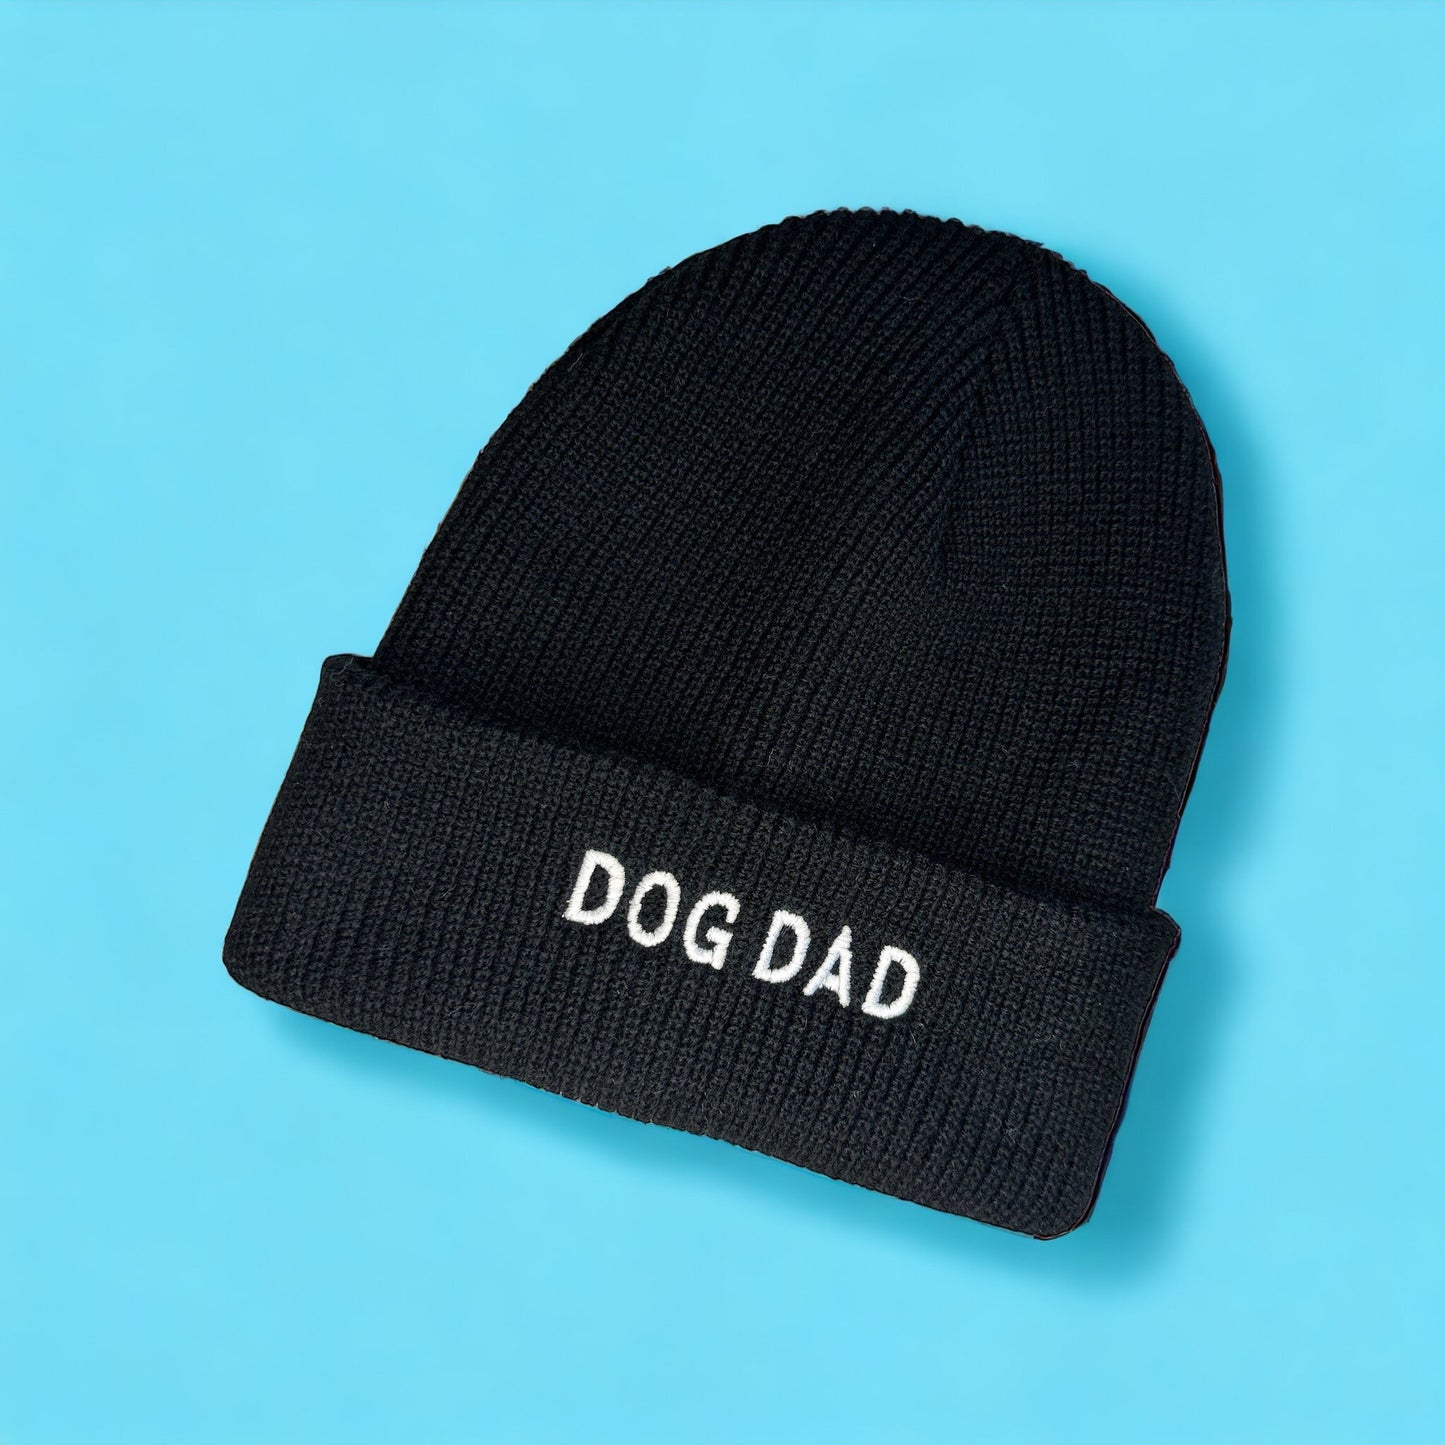 Dog Dad - Embroidered Black Beanie Hat